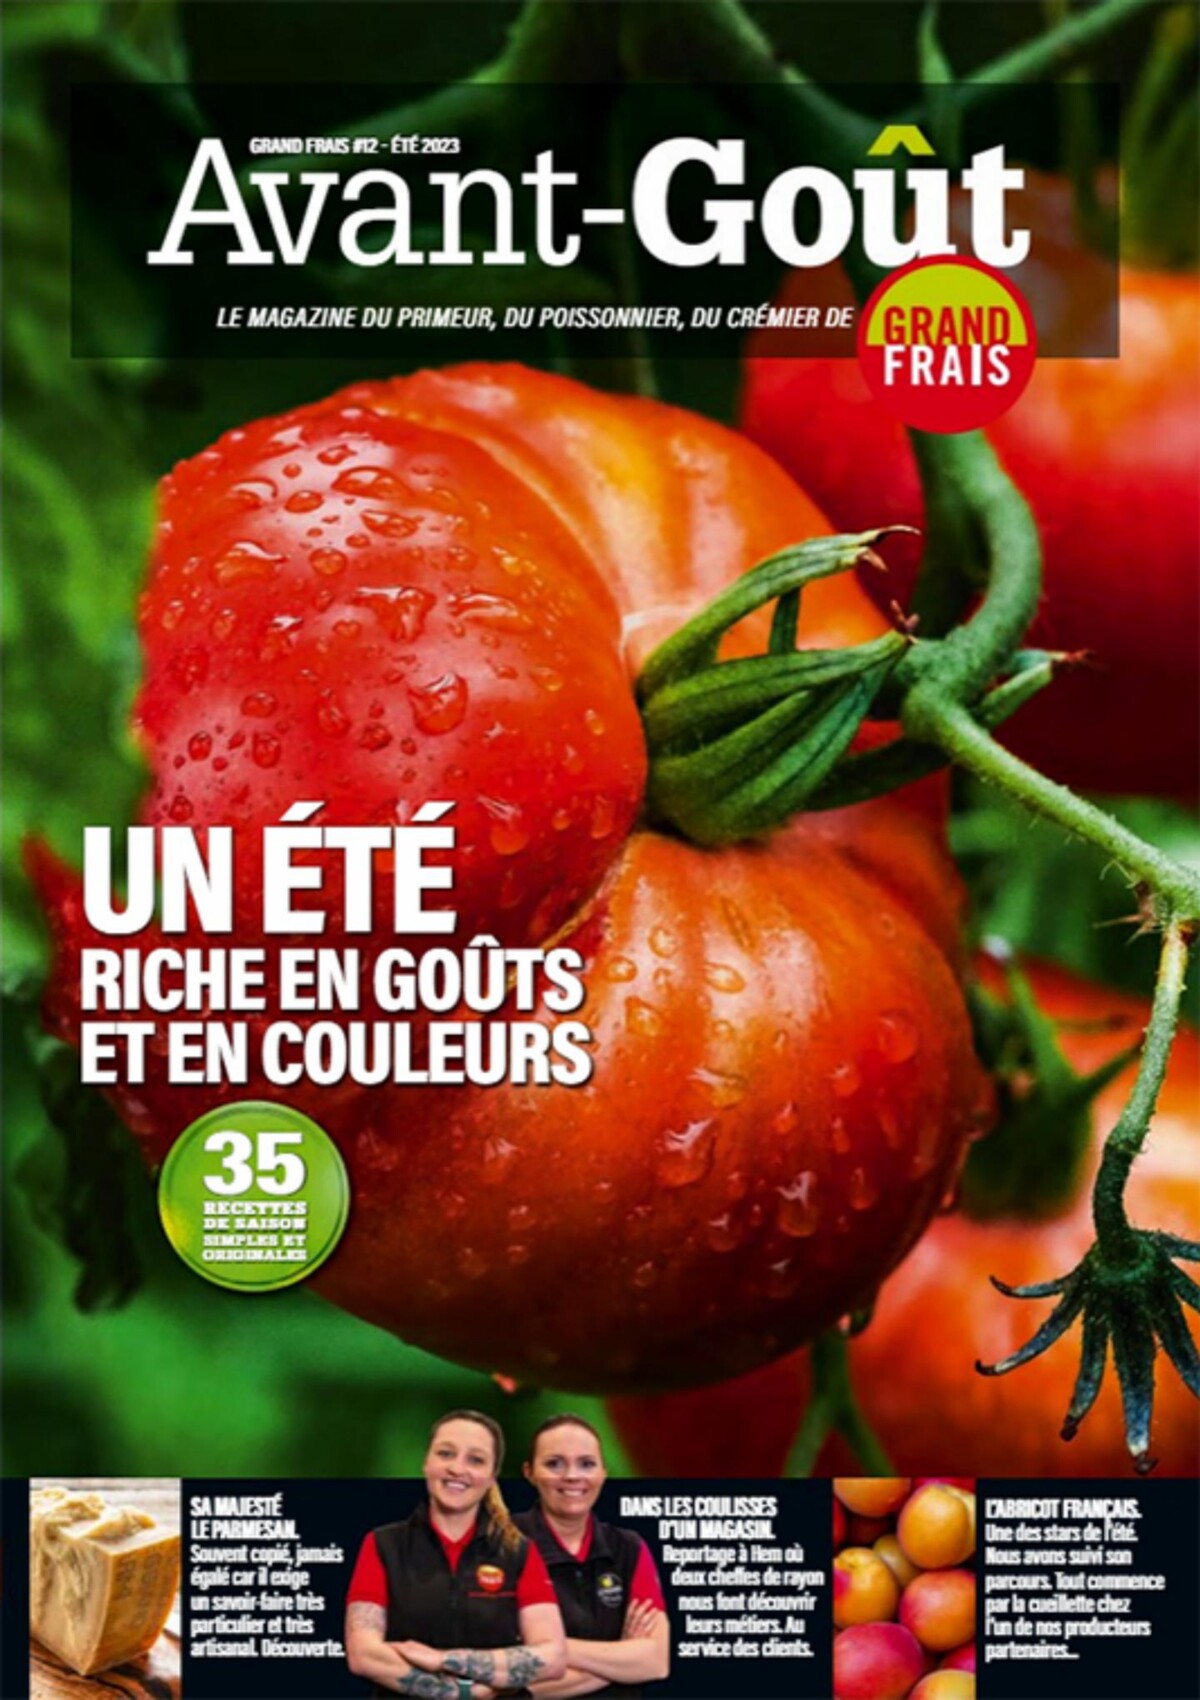 Catalogue Magazine Avant-Goût - Un été riche en goûts et en couleurs, page 00001